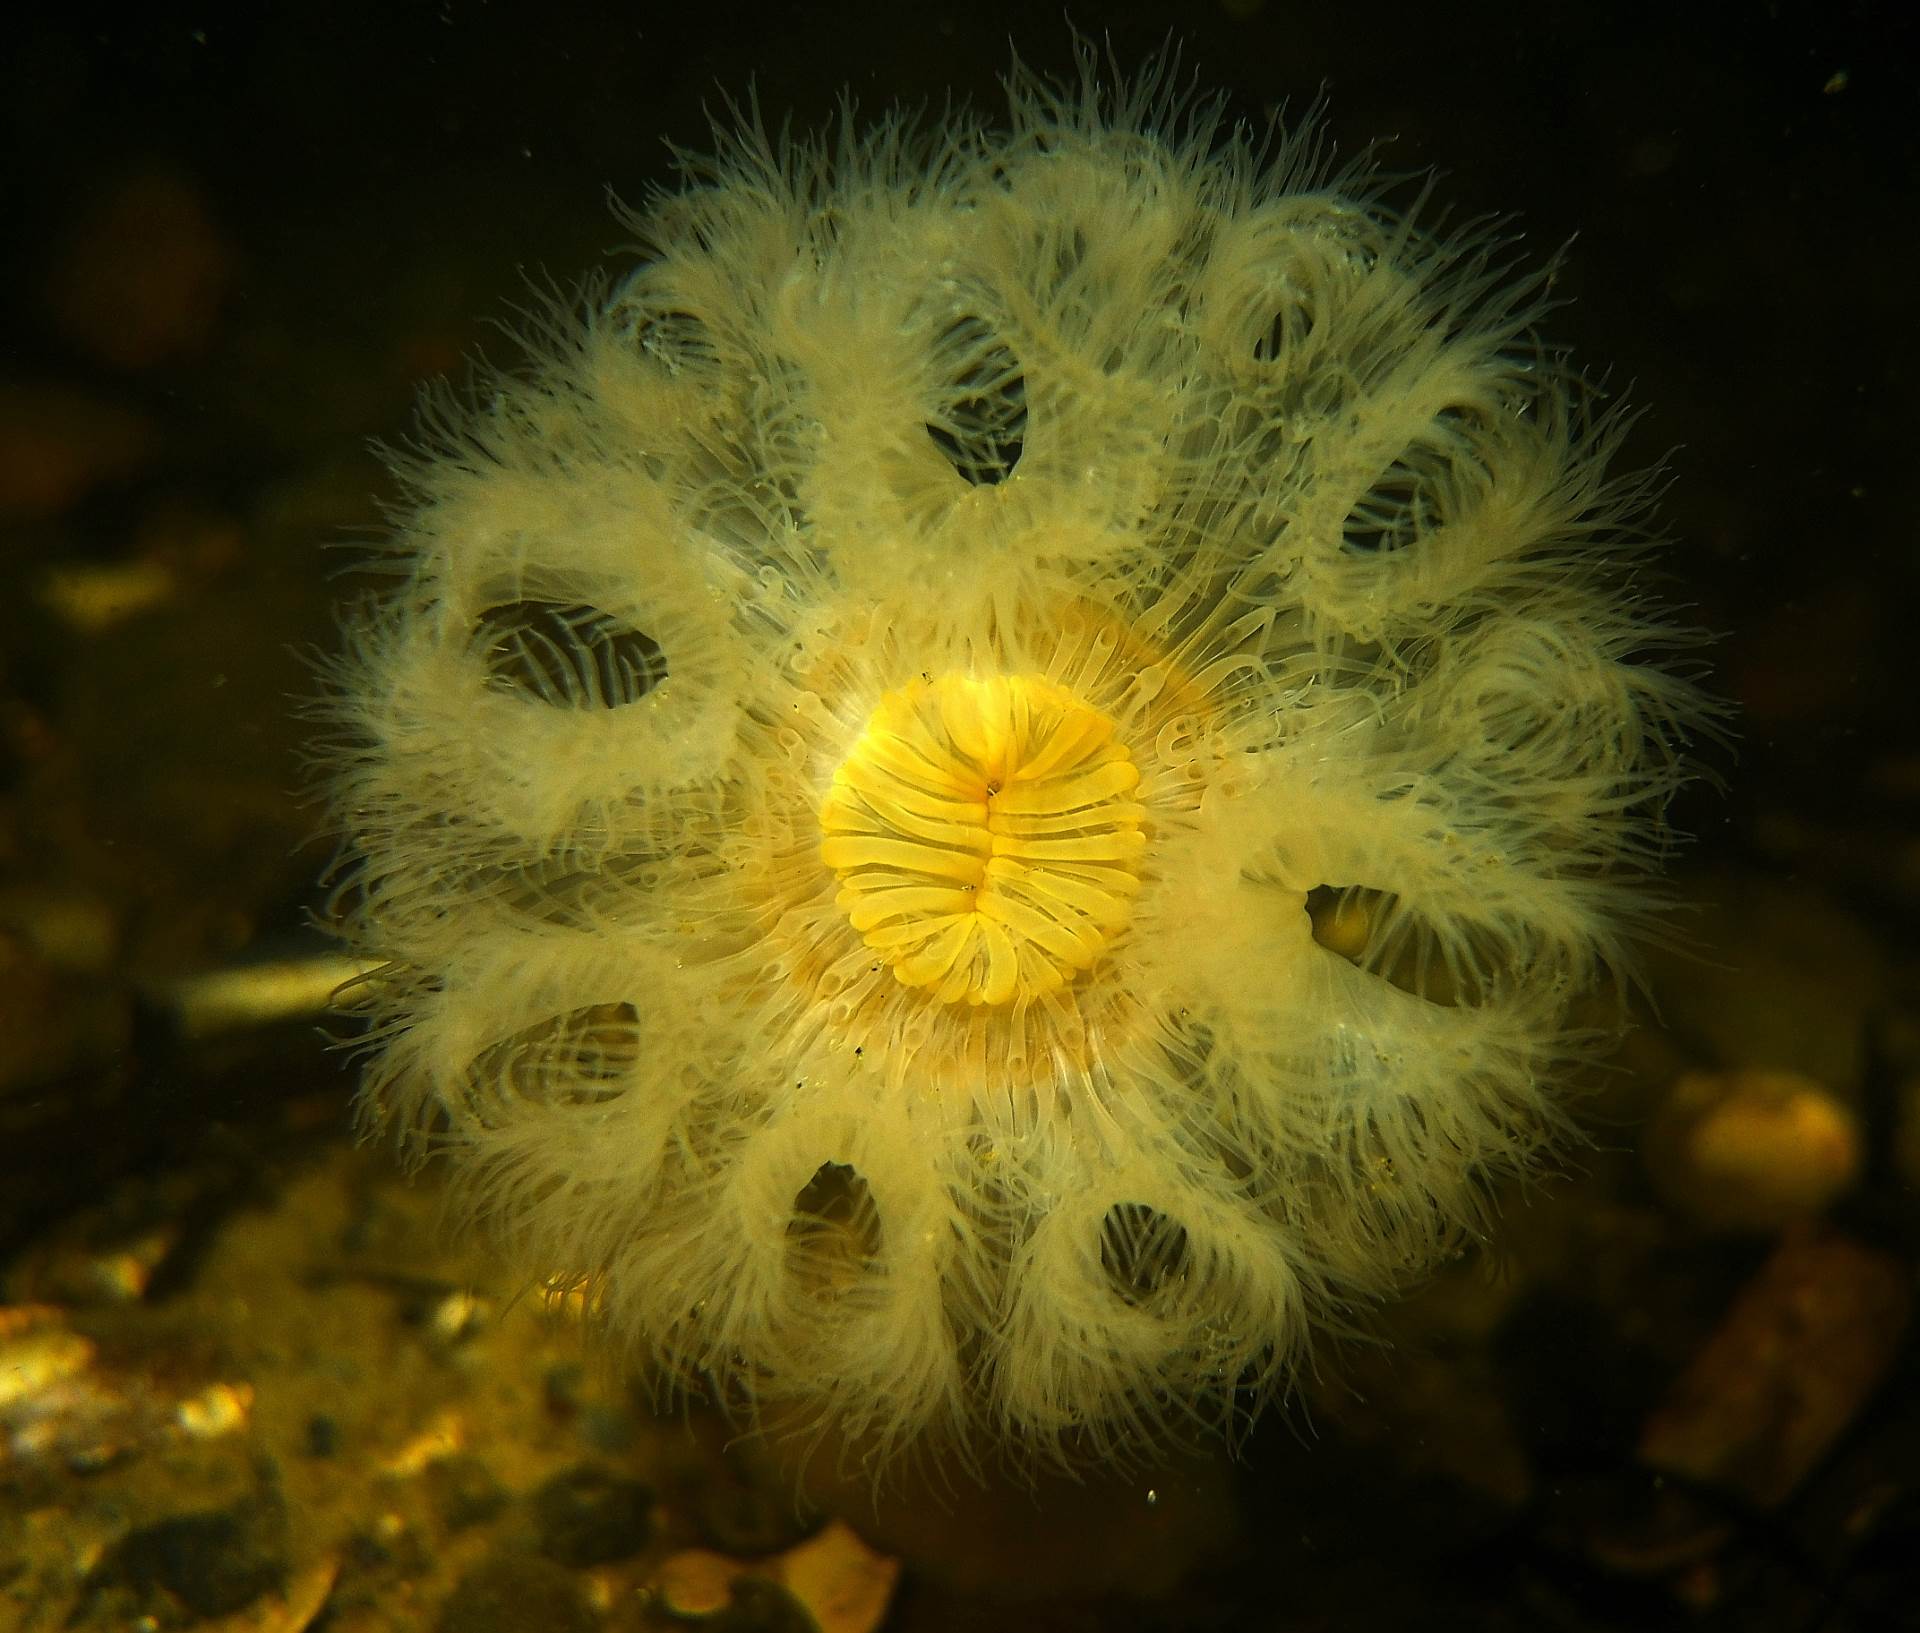 Sea anemone in denmark..... Looks alien